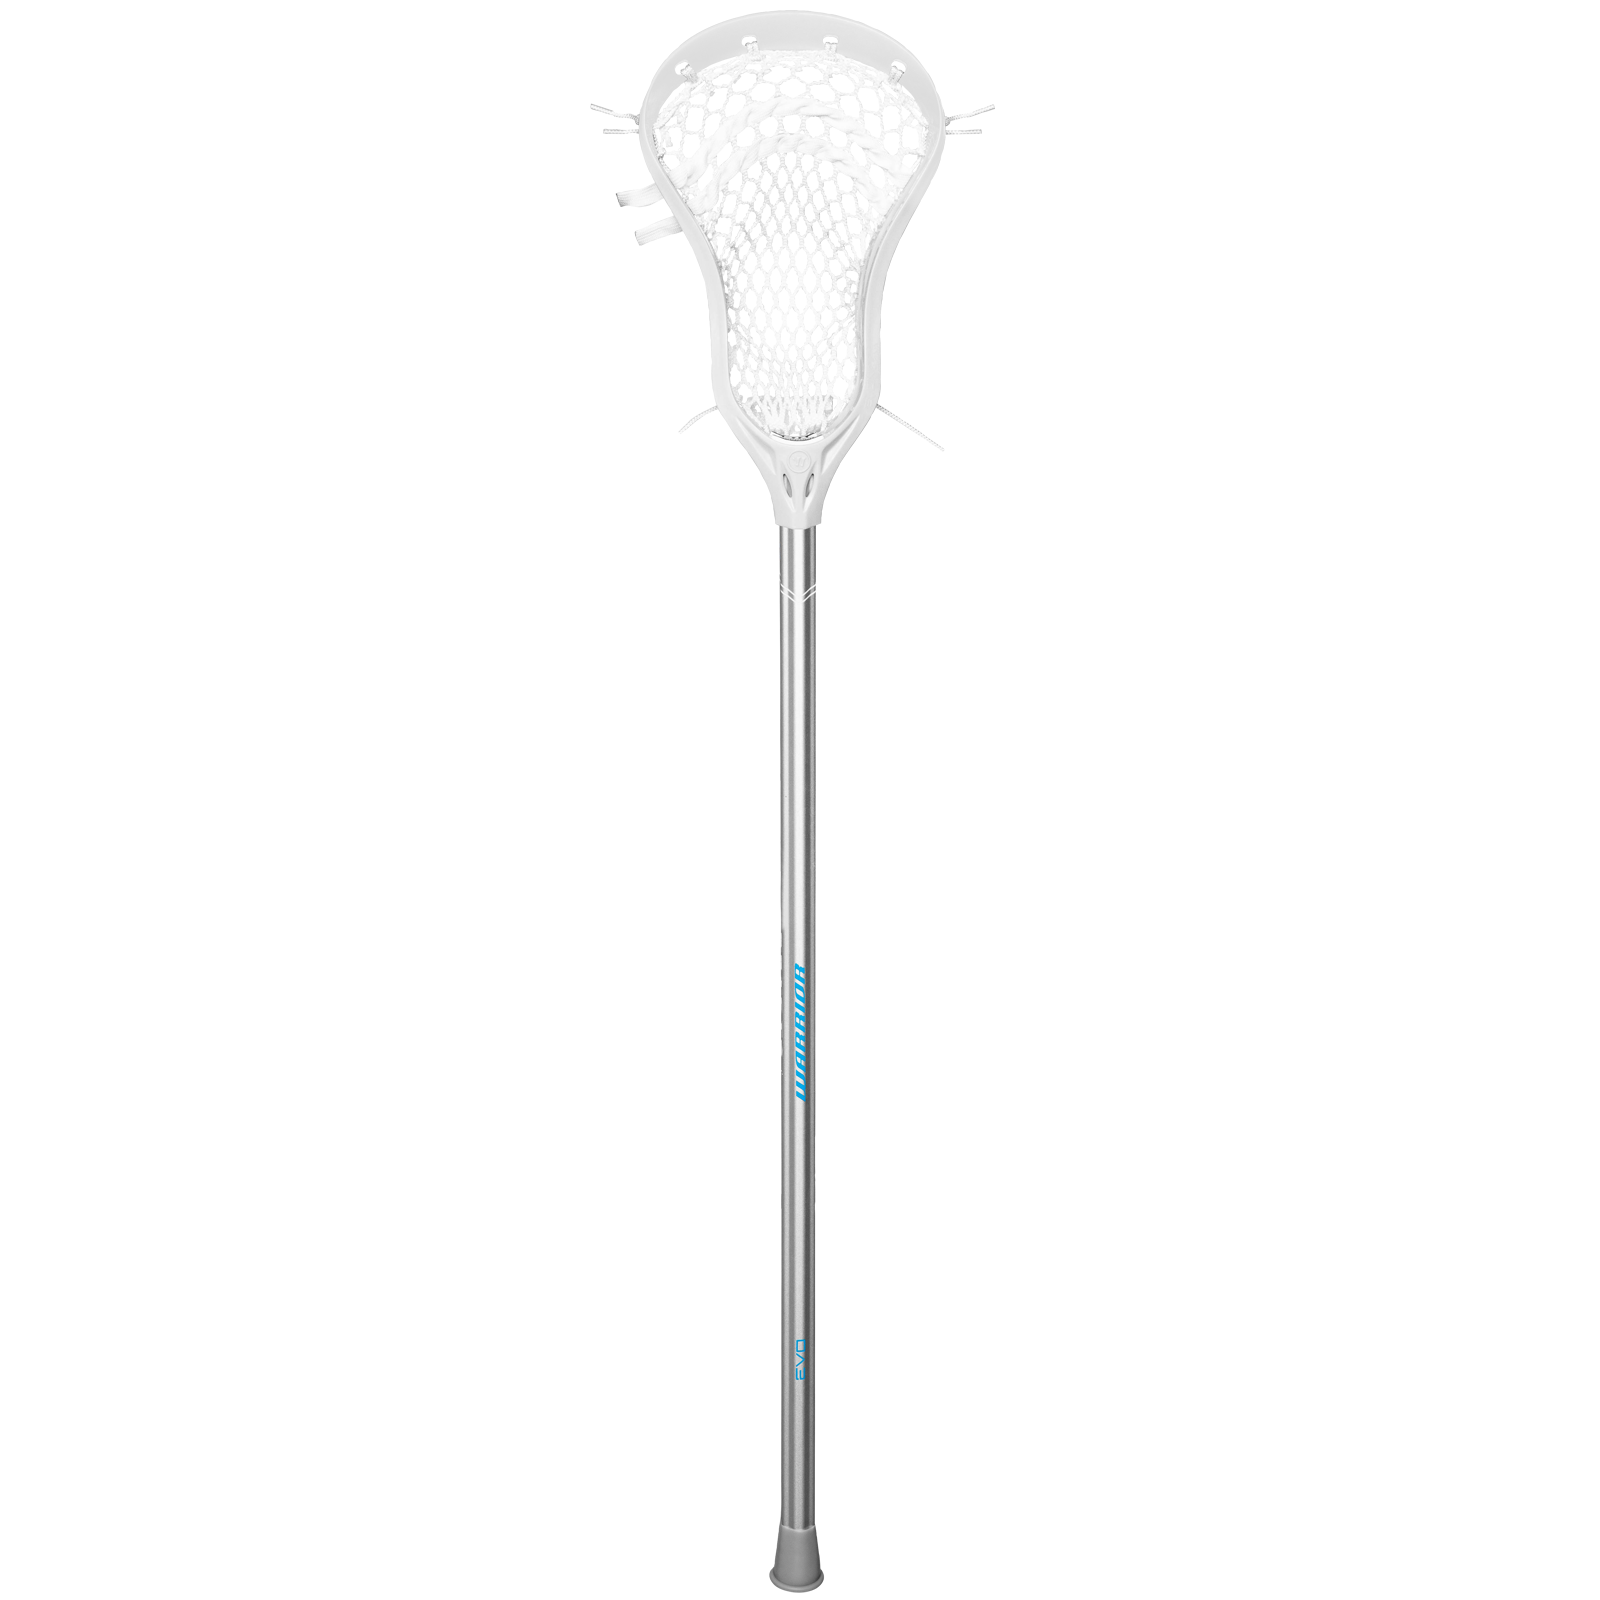 Warrior EVO Attack Lacrosse Complete Stick